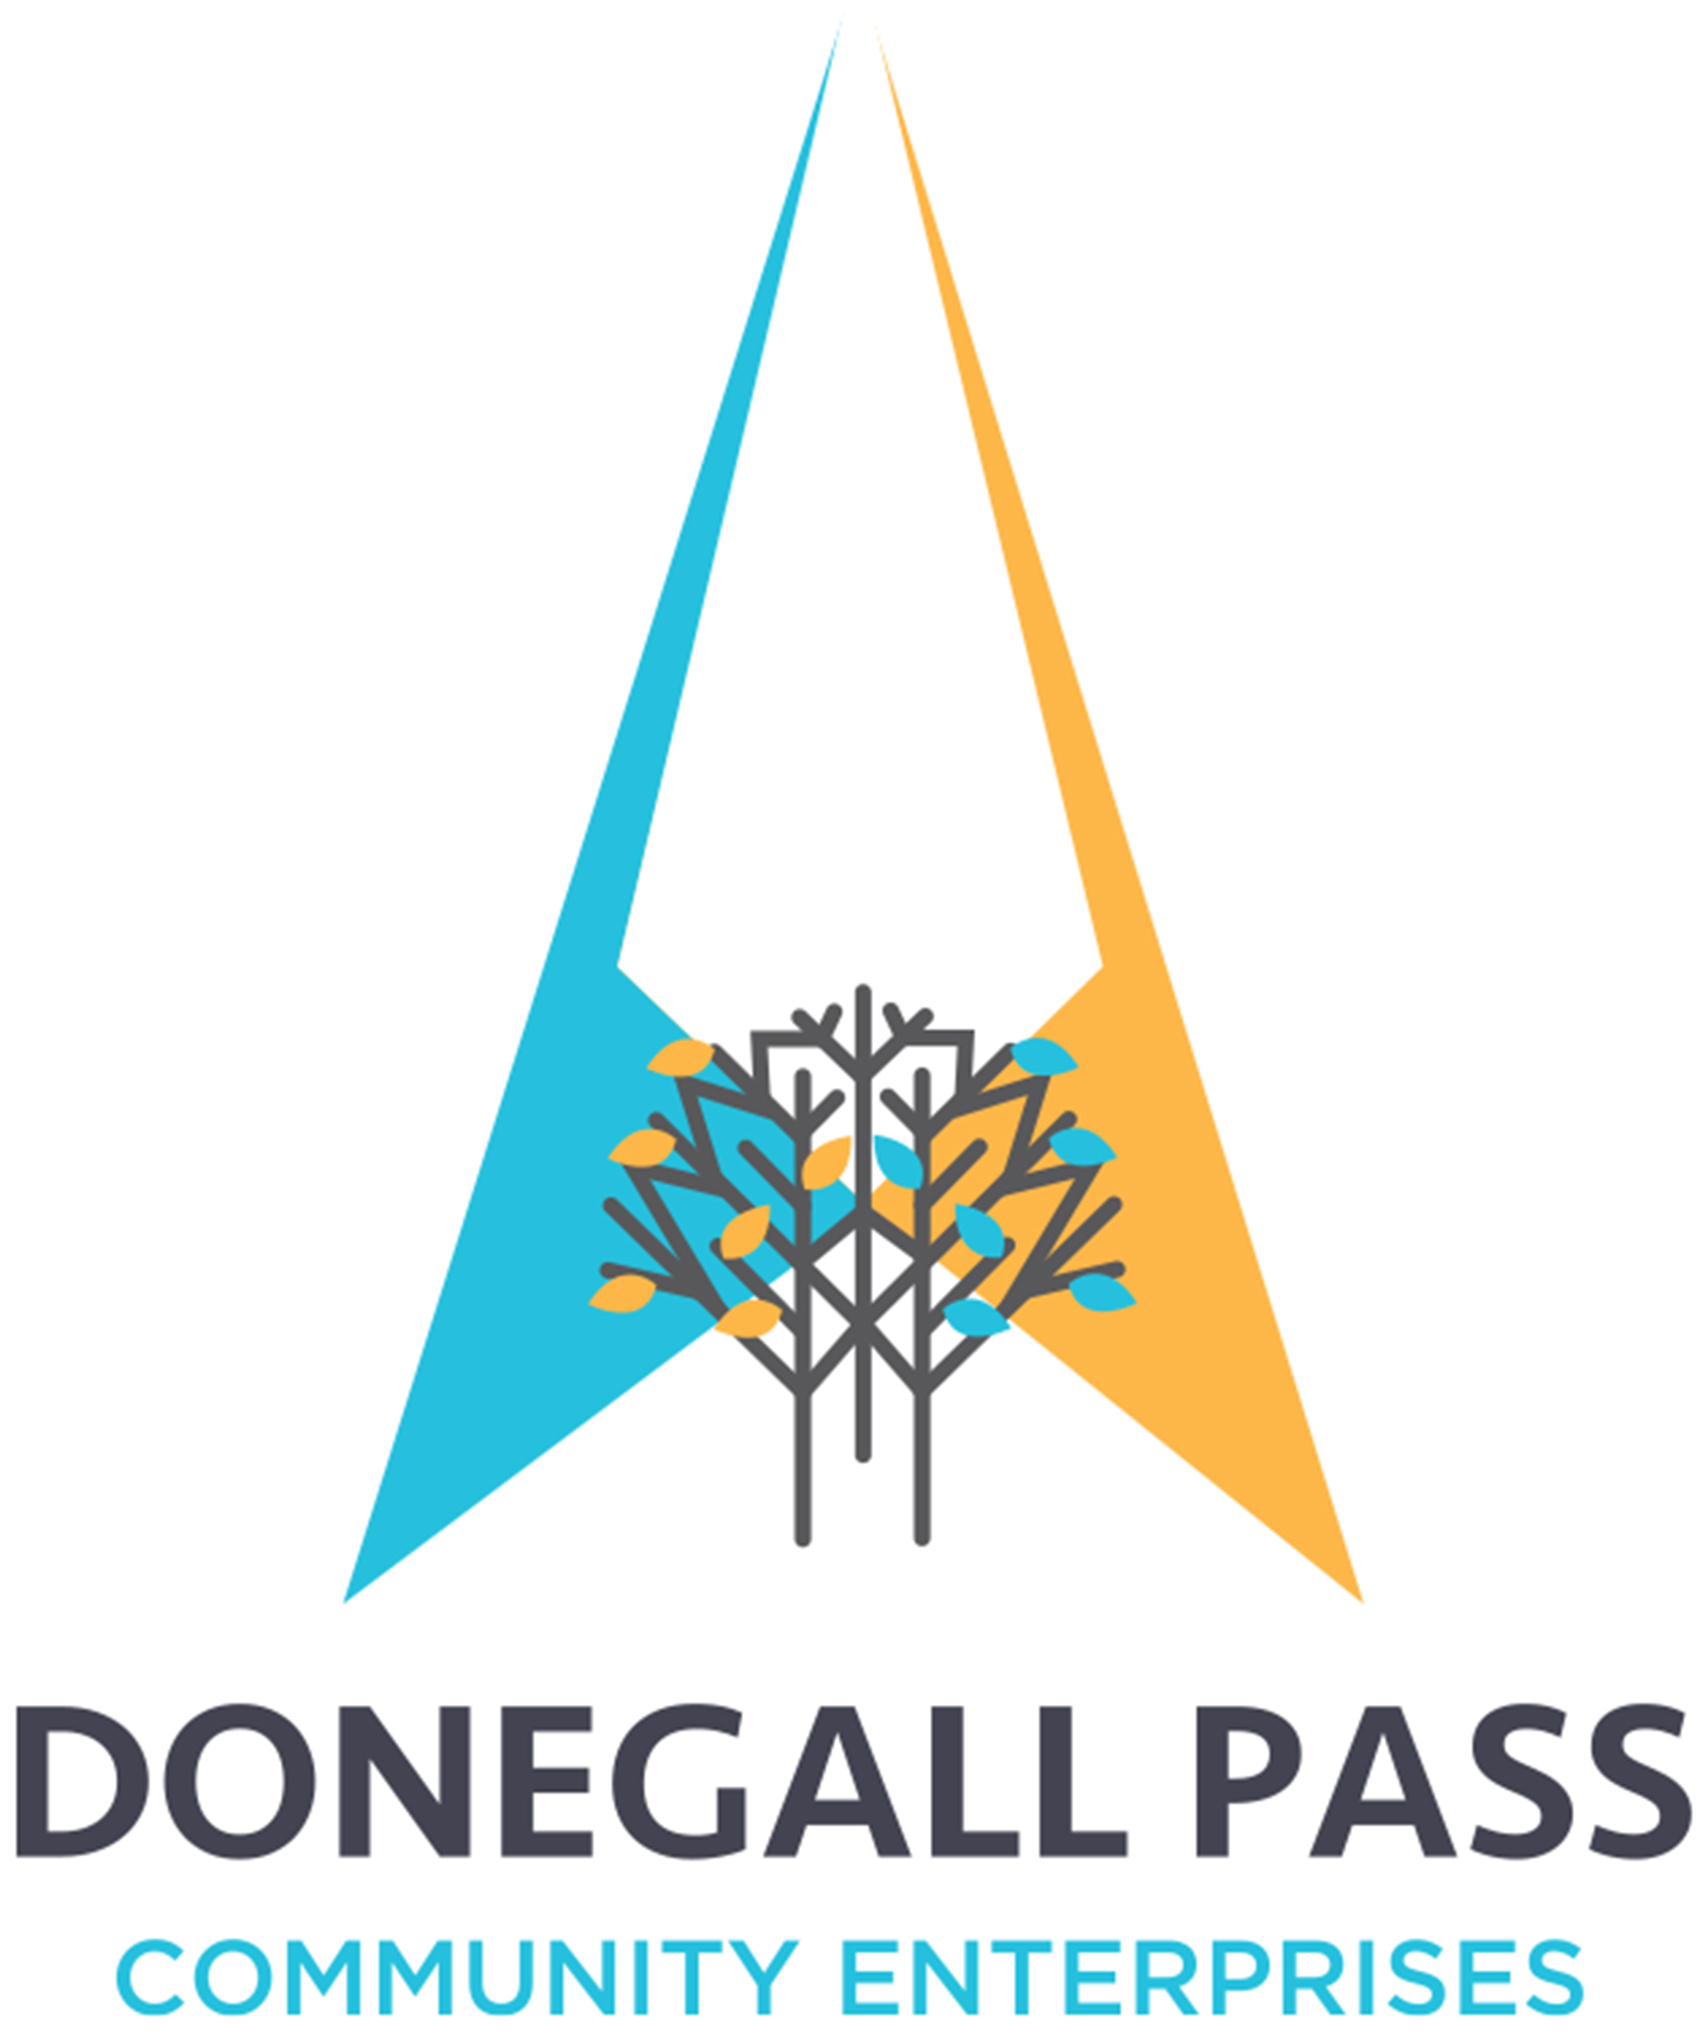 Donegall Pass Community Enterprises